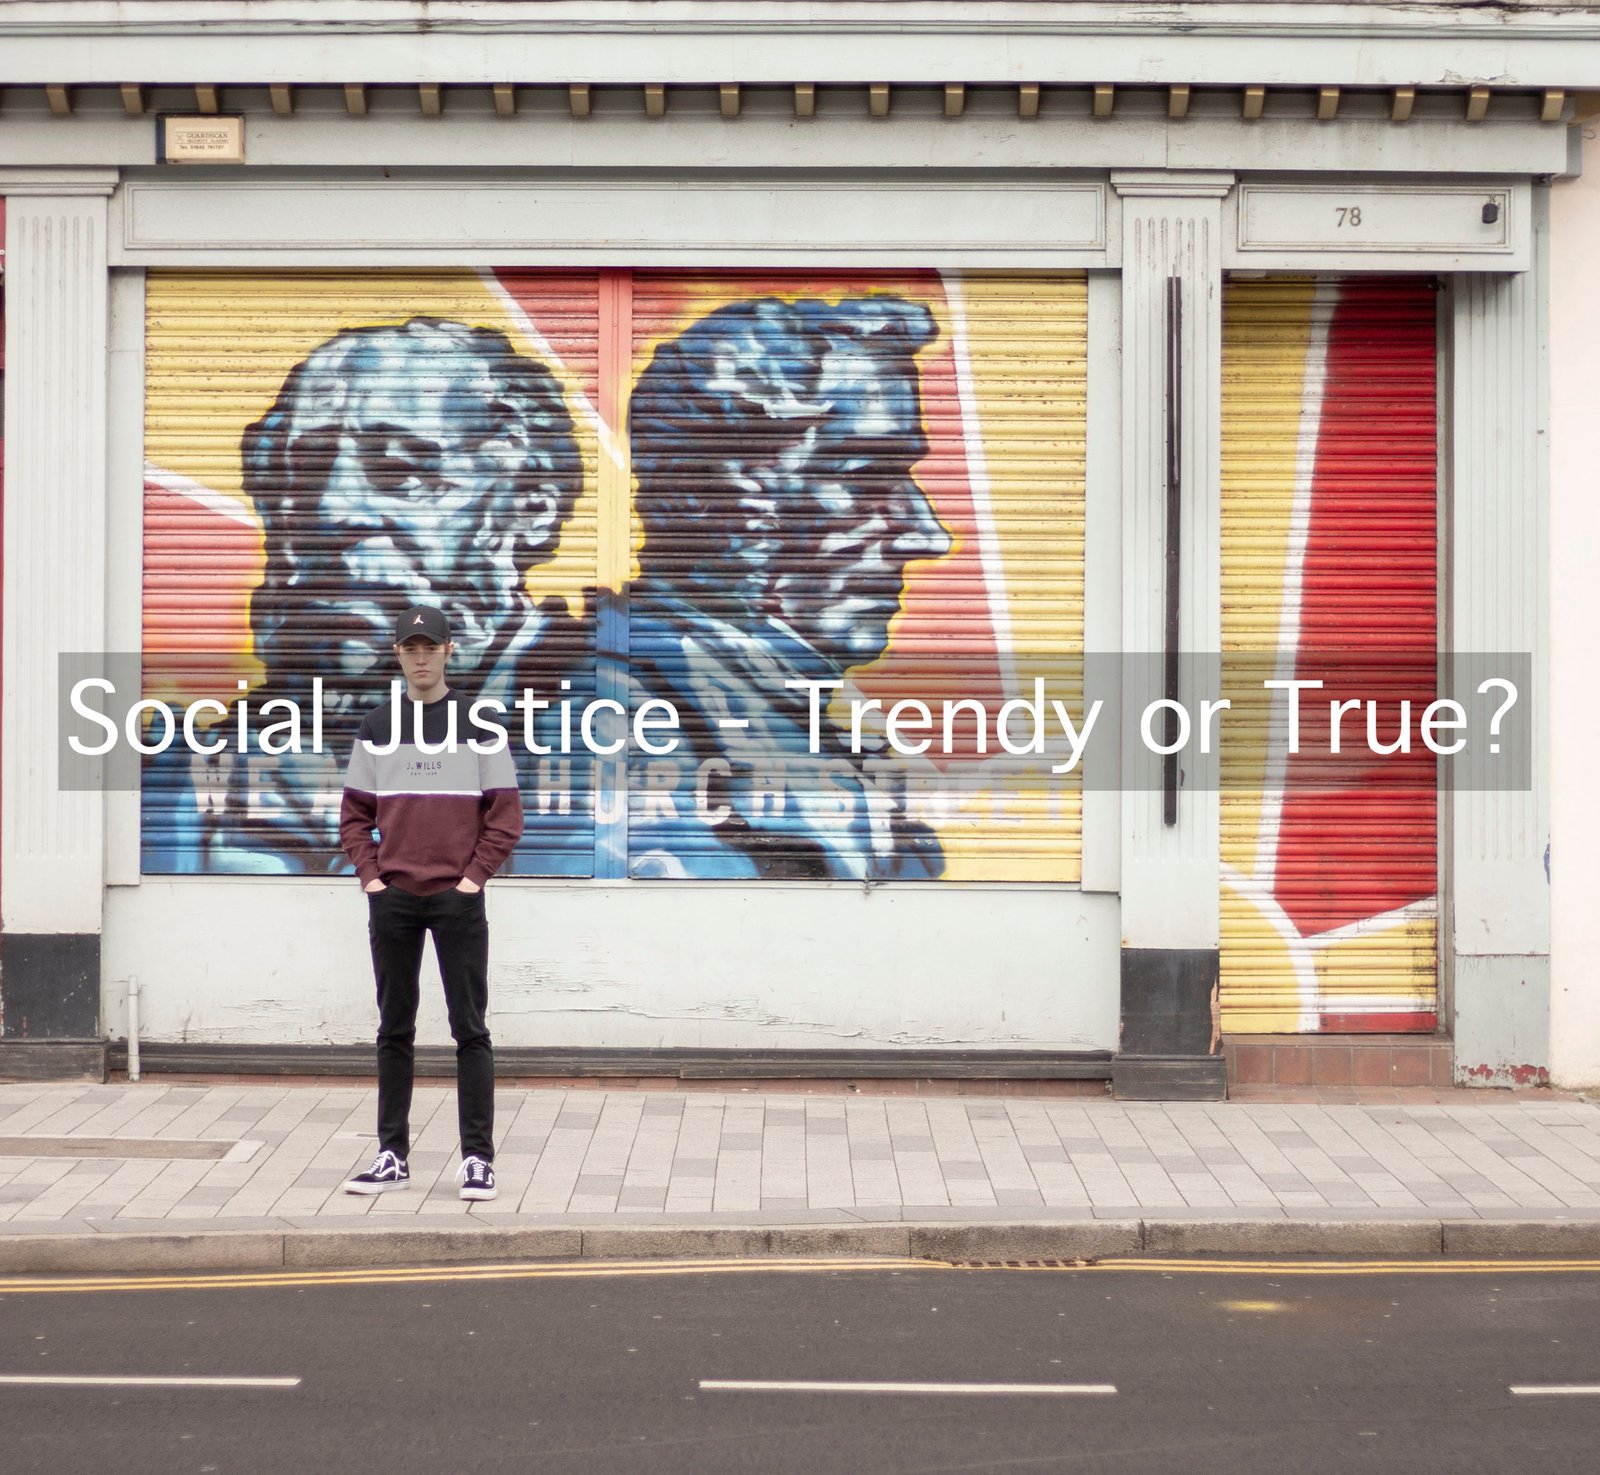 Social Justice – Trendy or True?